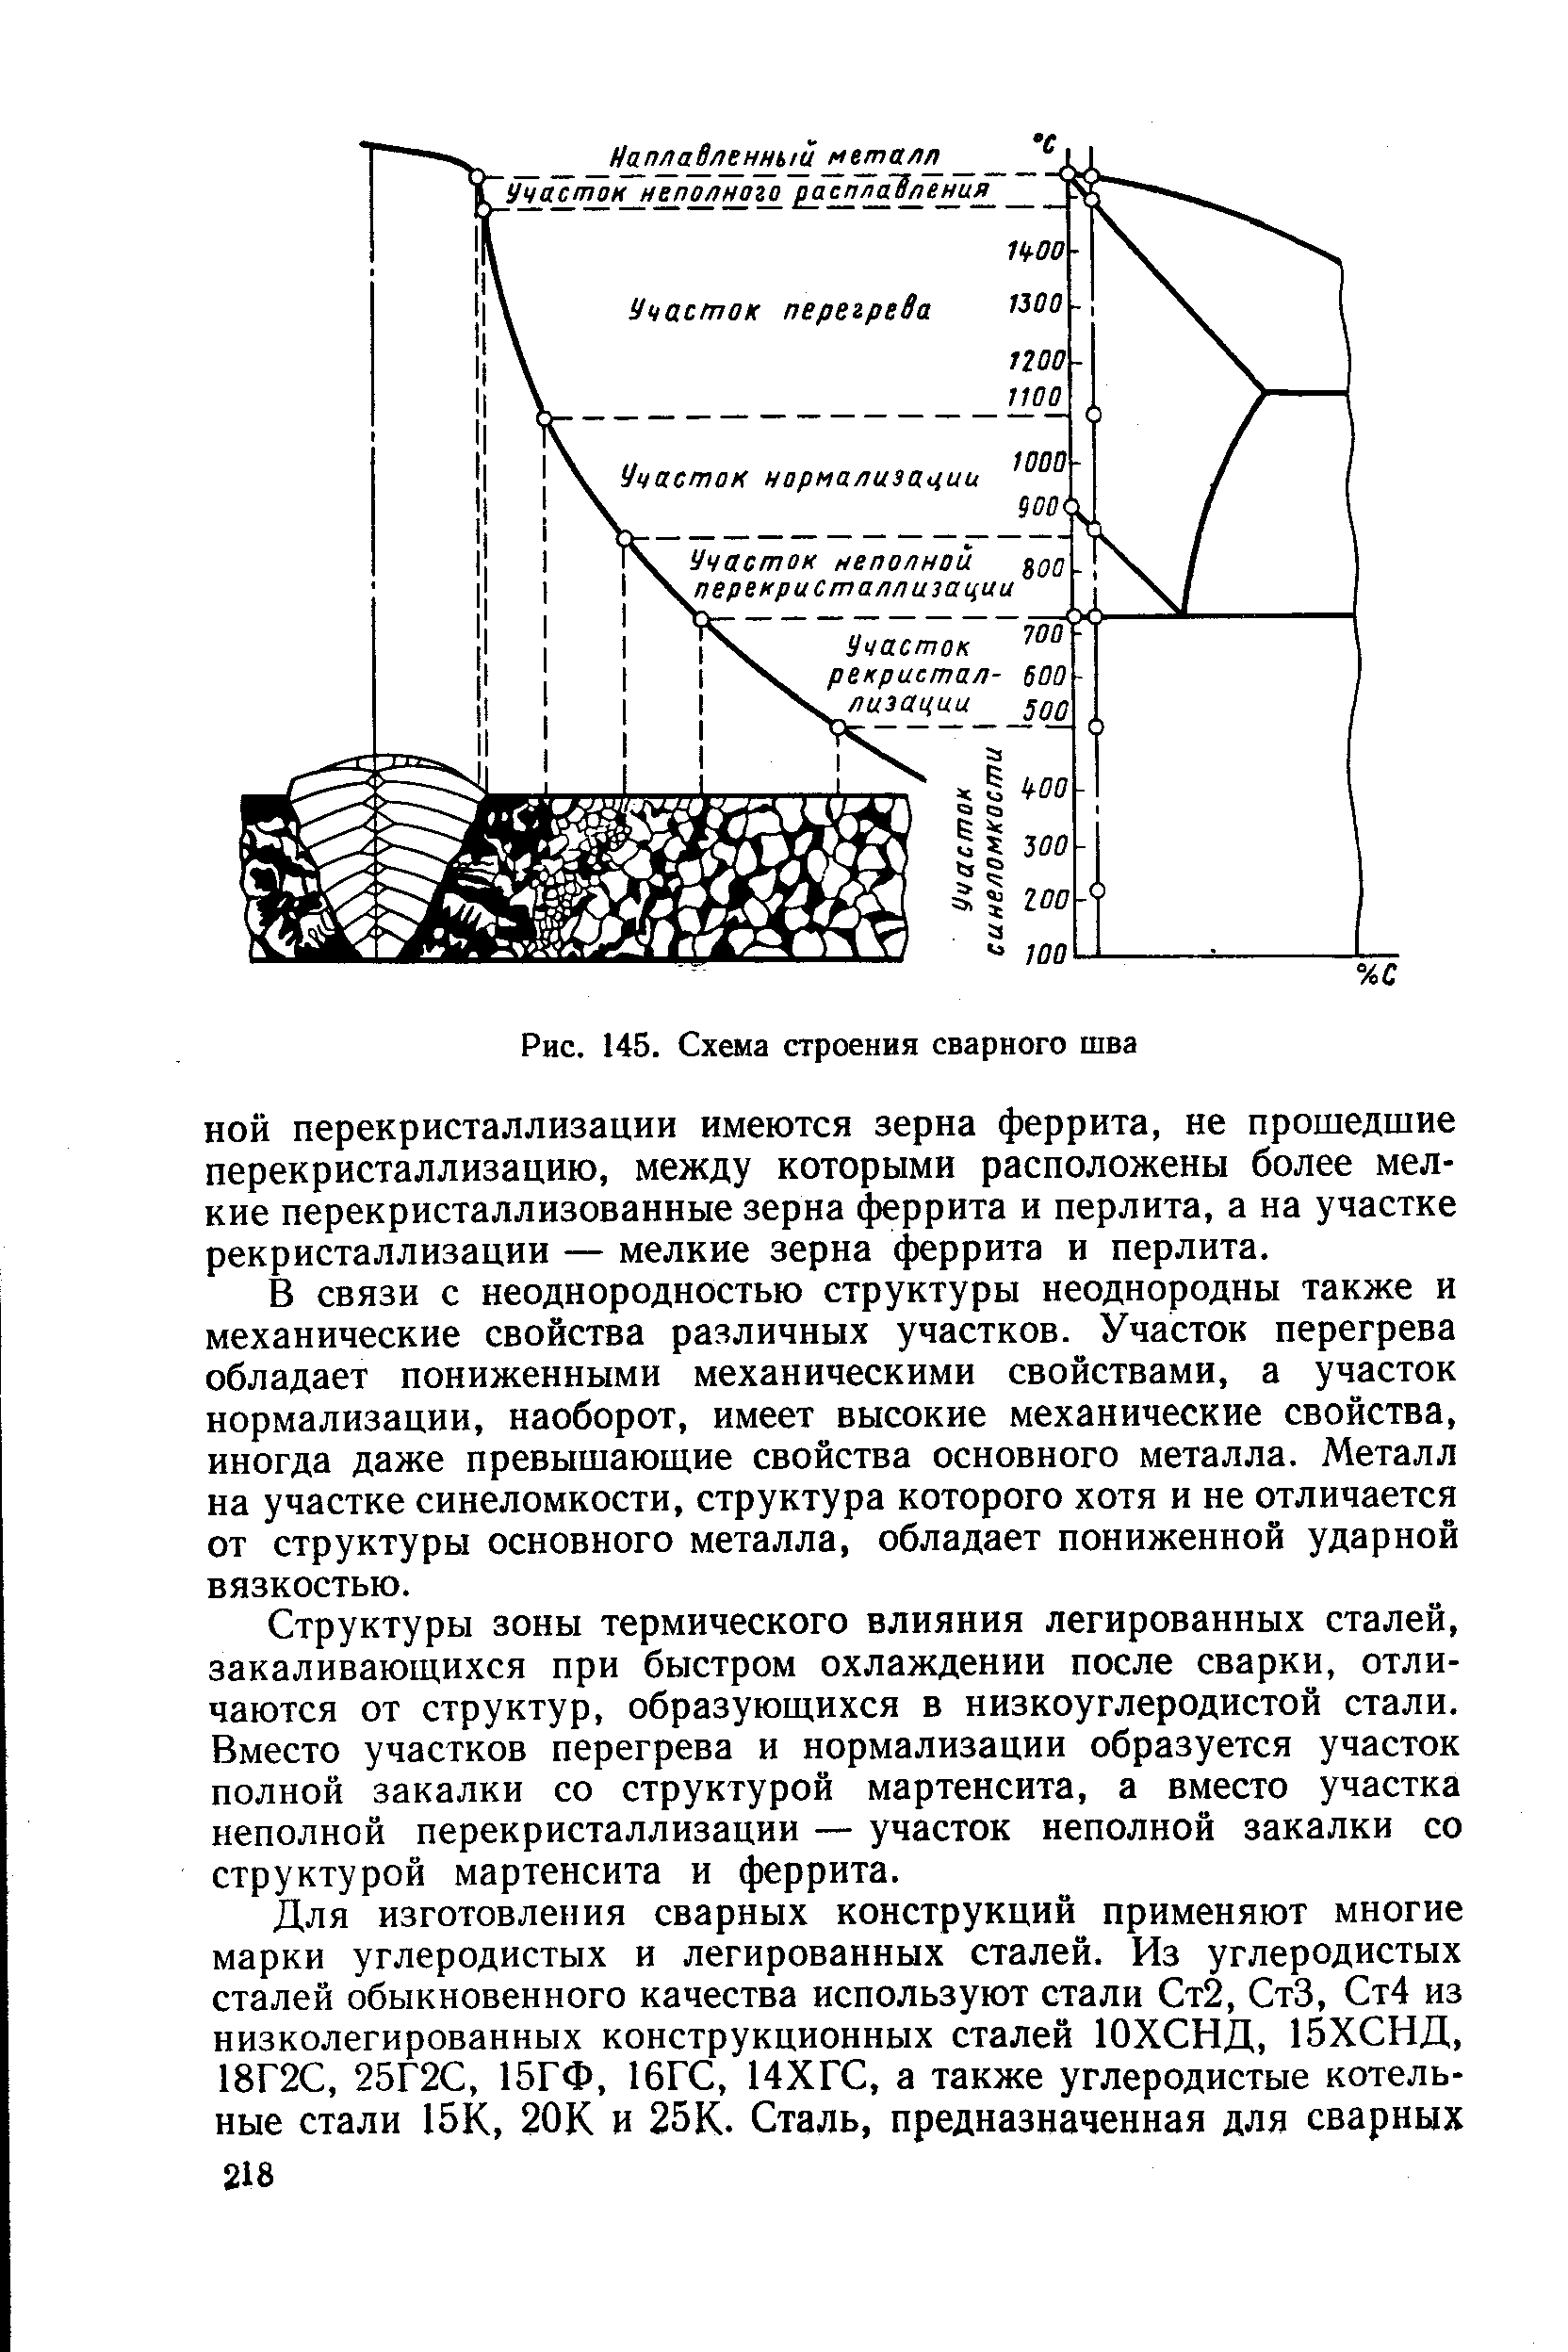 Рис. 145. Схема строения сварного шва
